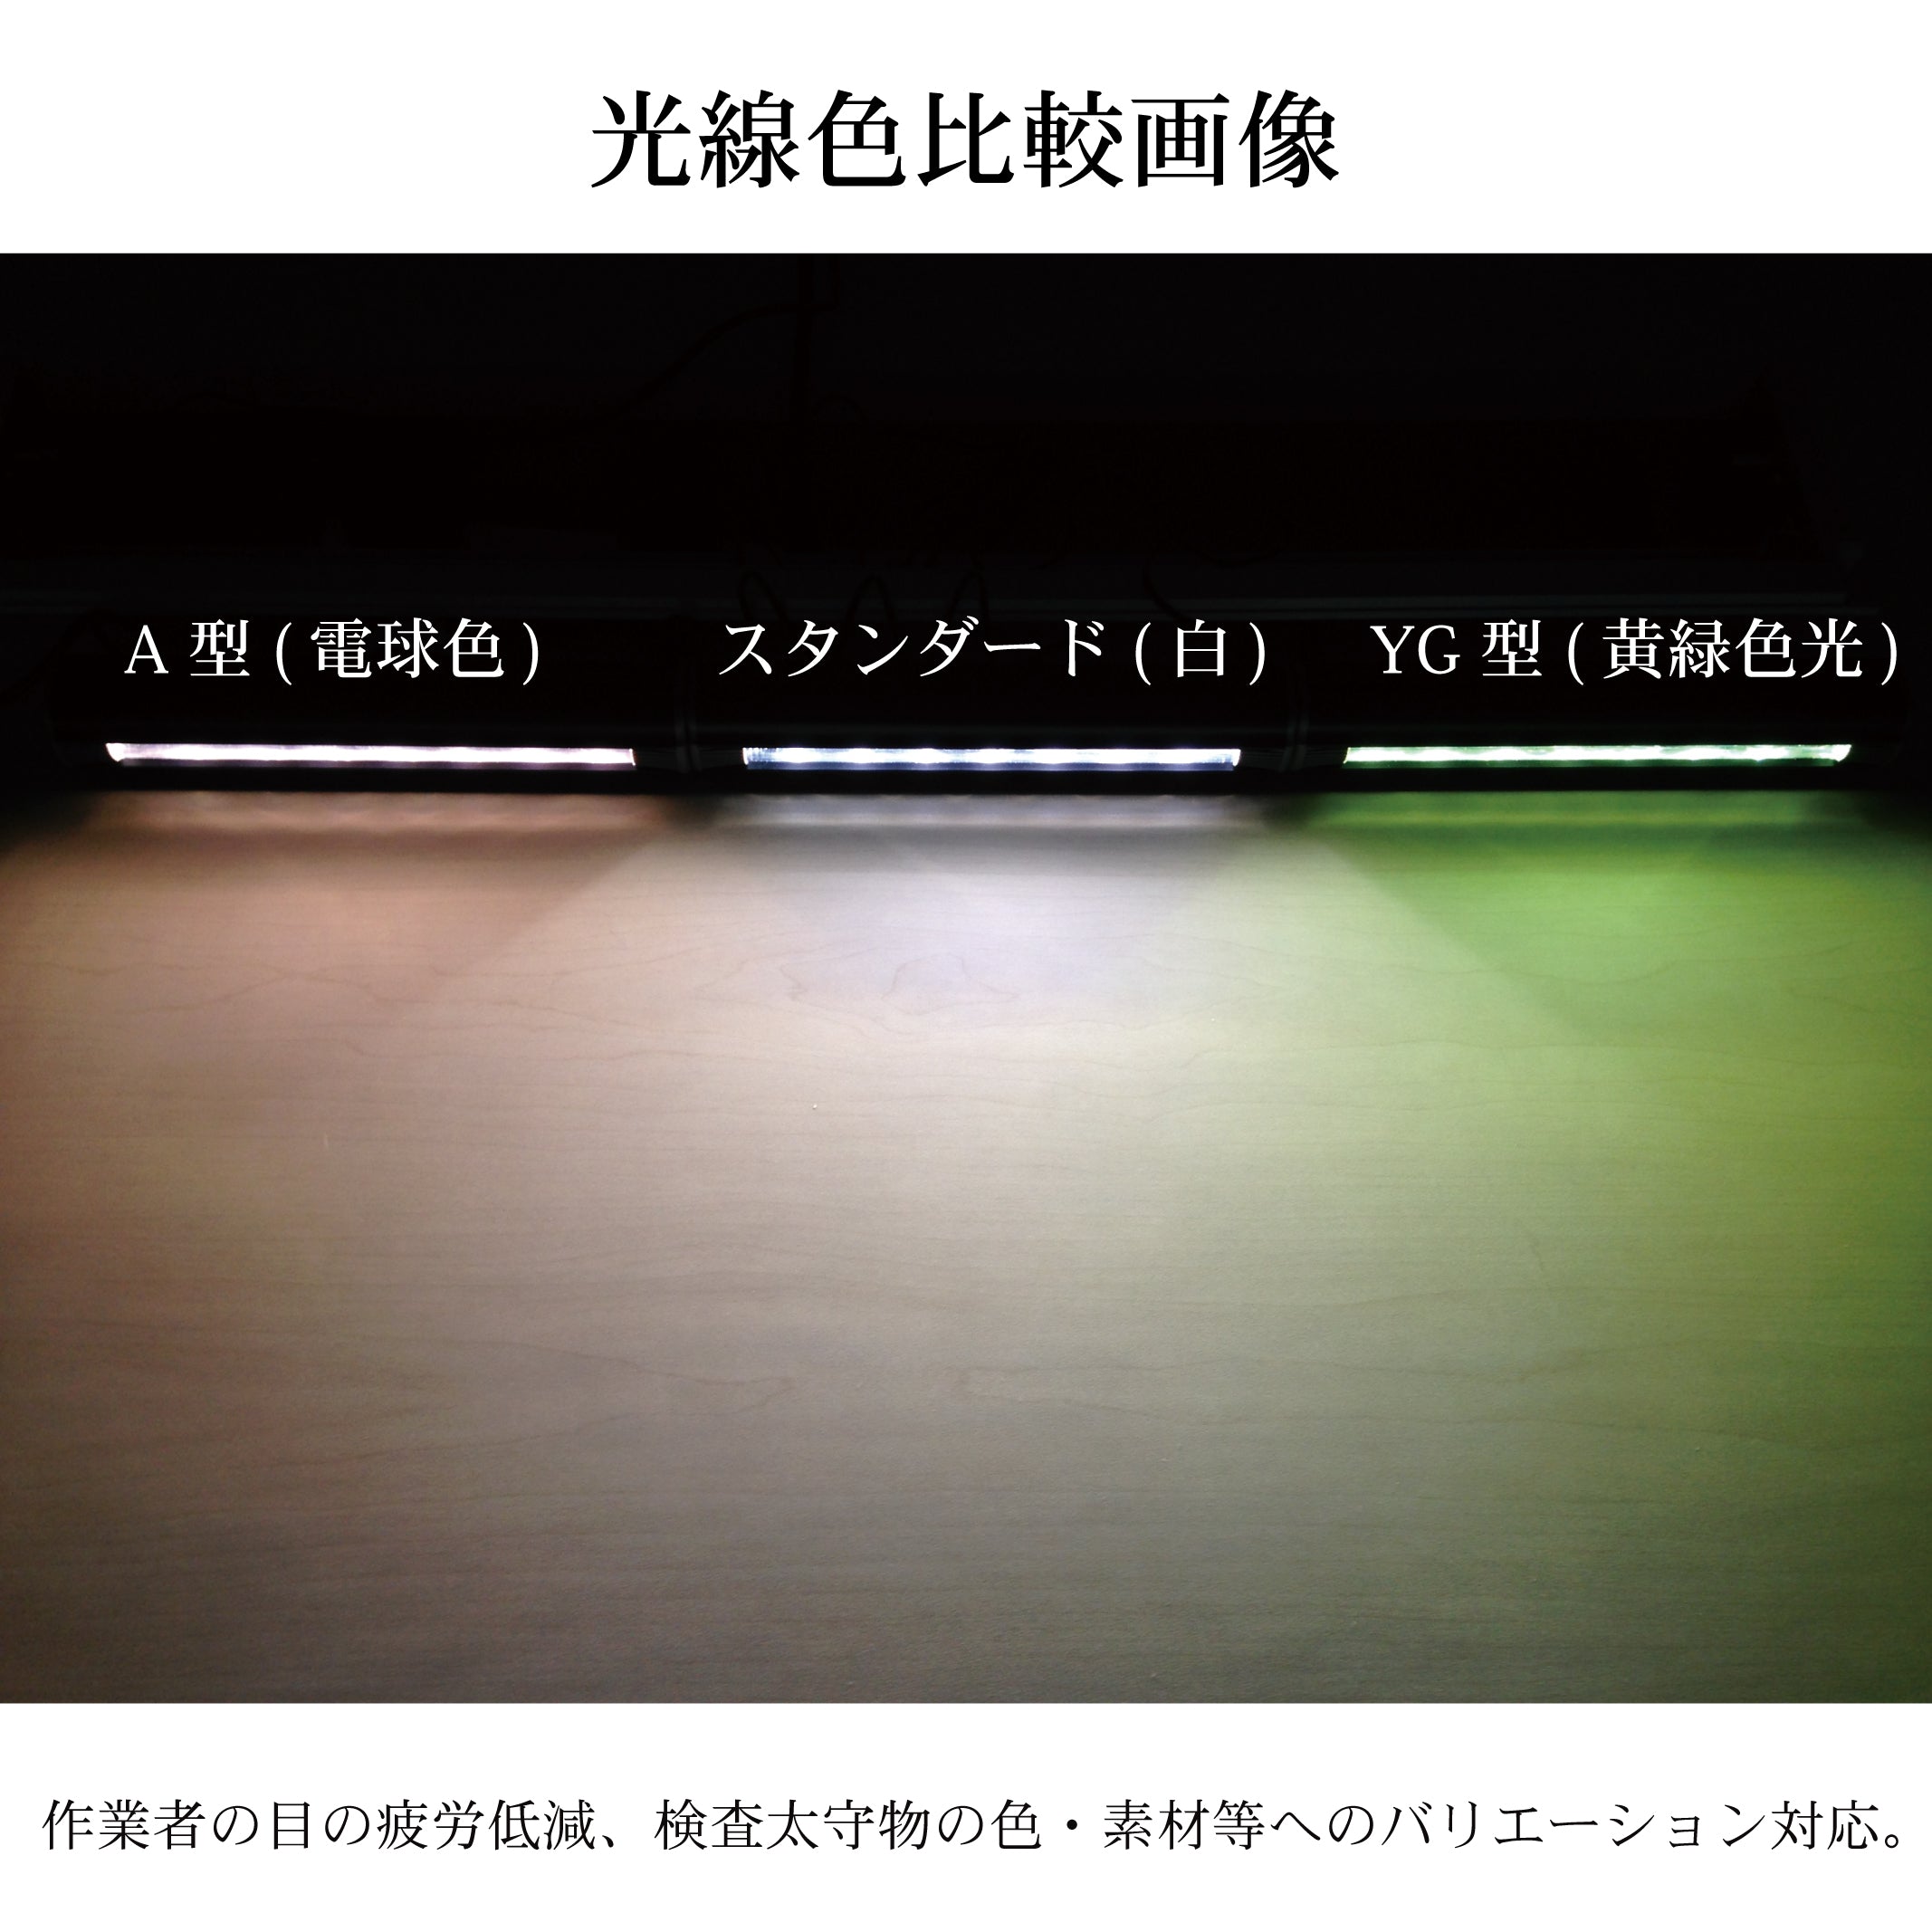 バーライト3 LED表面キズ検査照明 – オーツカ光学公式オンラインショップ